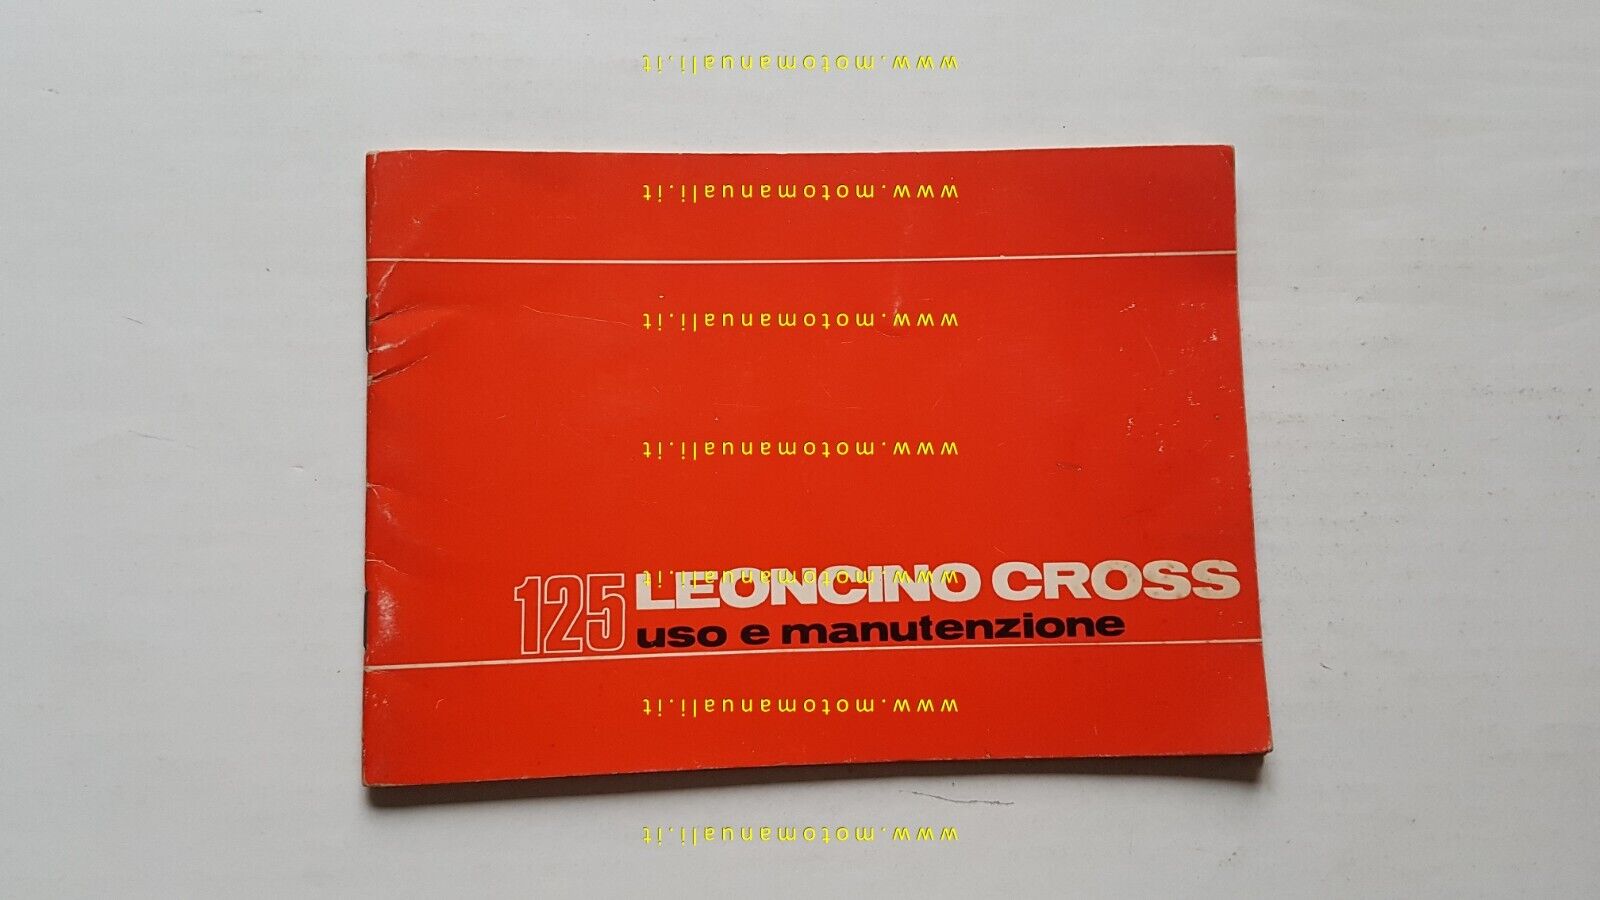 Benelli 125 Leoncino Cross 1971 manuale uso manutenzione libretto originale